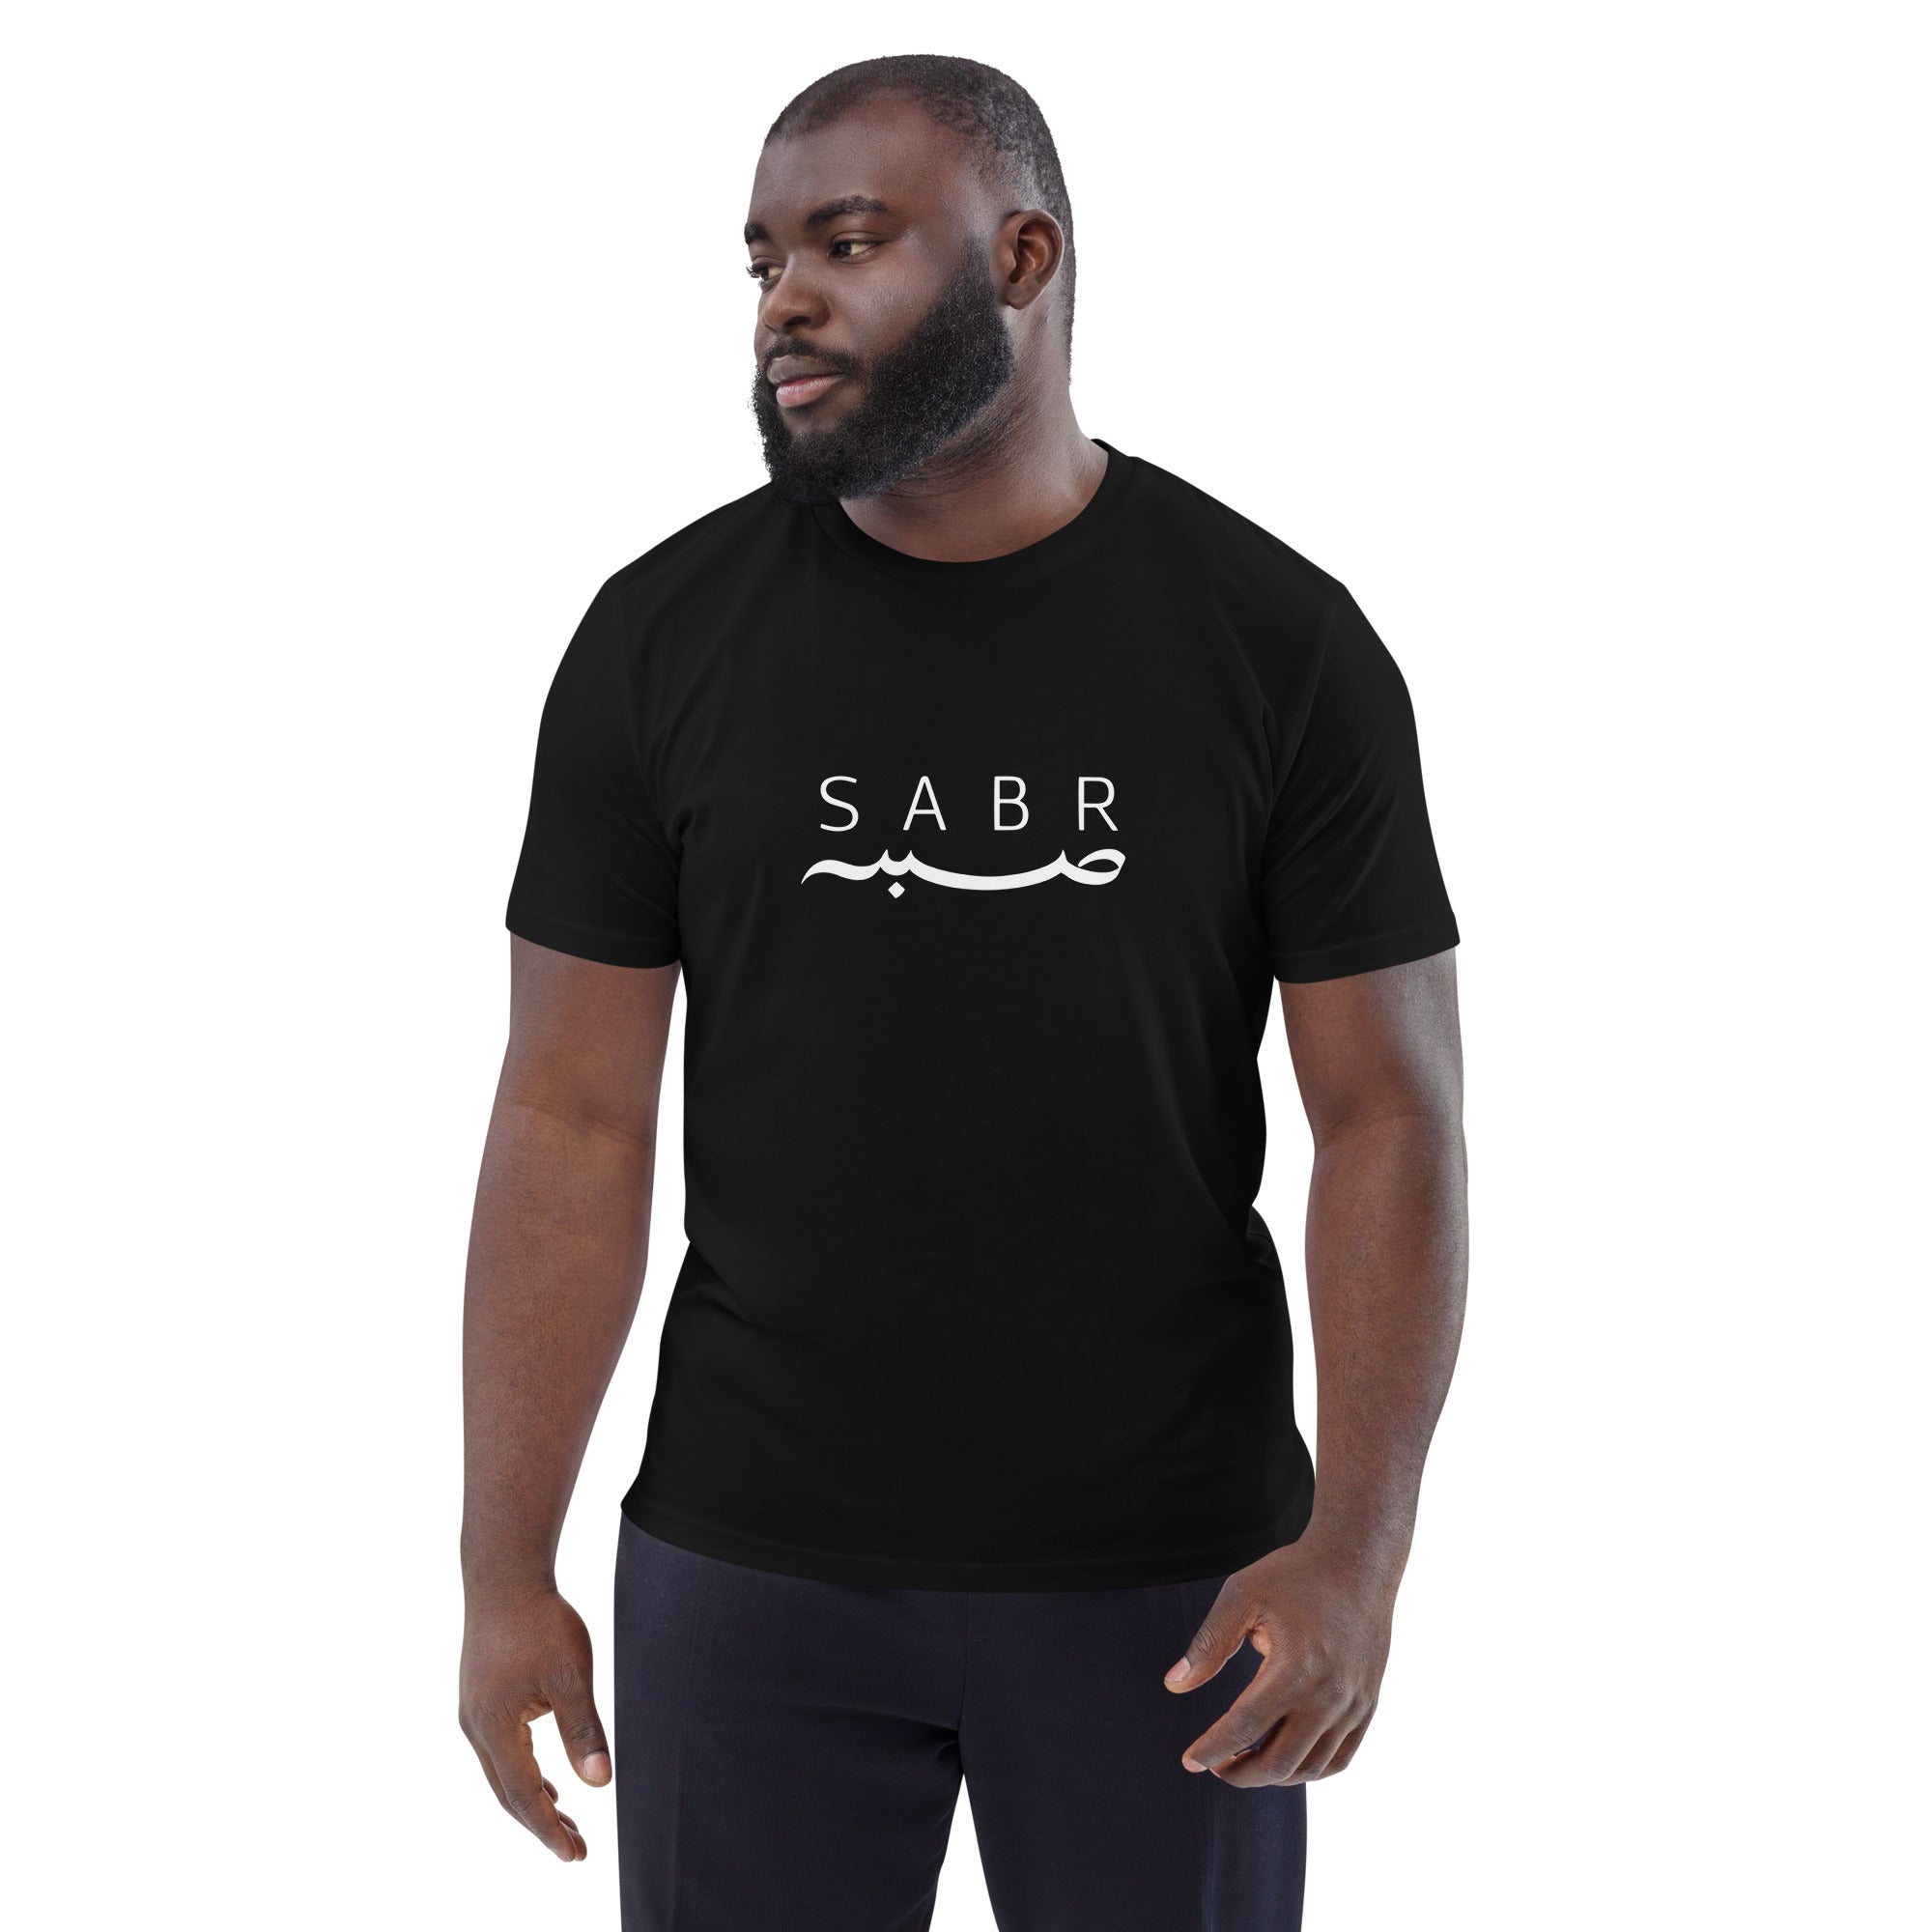 Sabr t-shirt